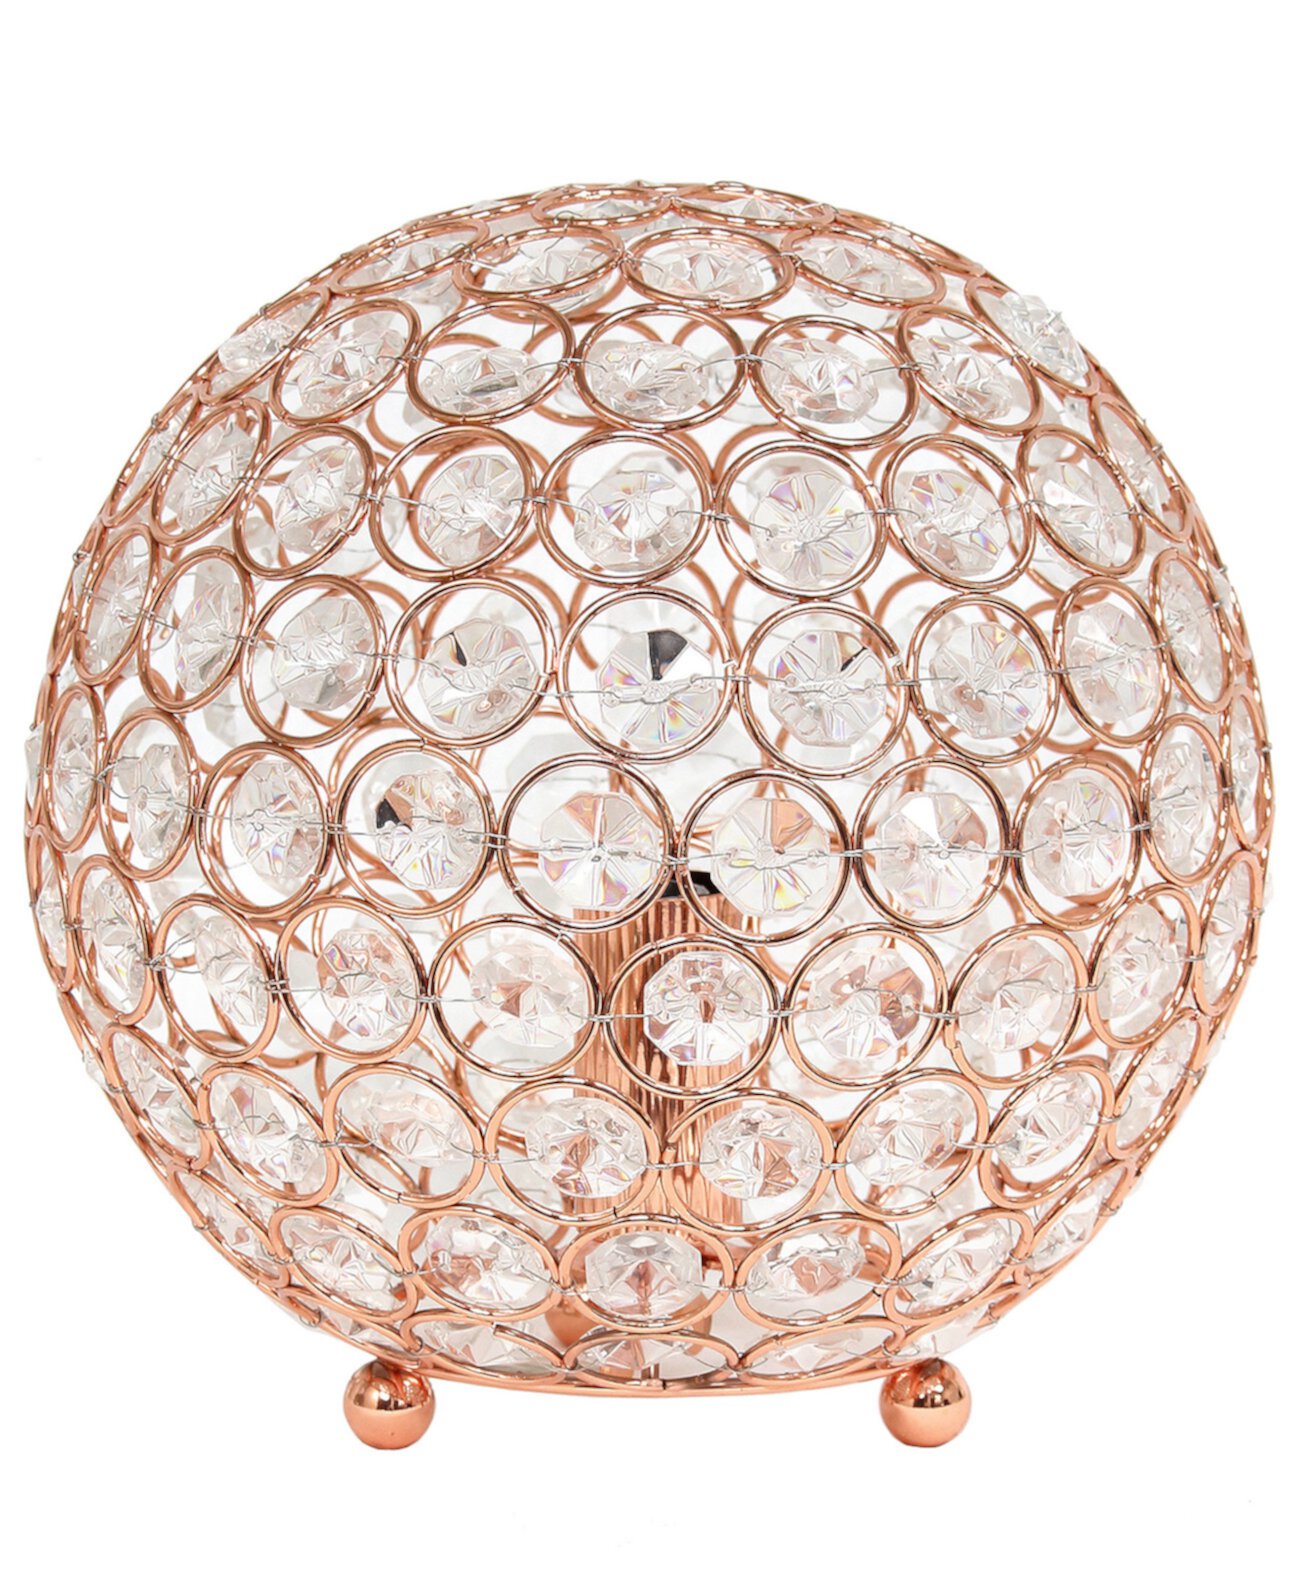 Настольная лампа Elipse 8 дюймов с хрустальным шаром и блестками Elegant Designs